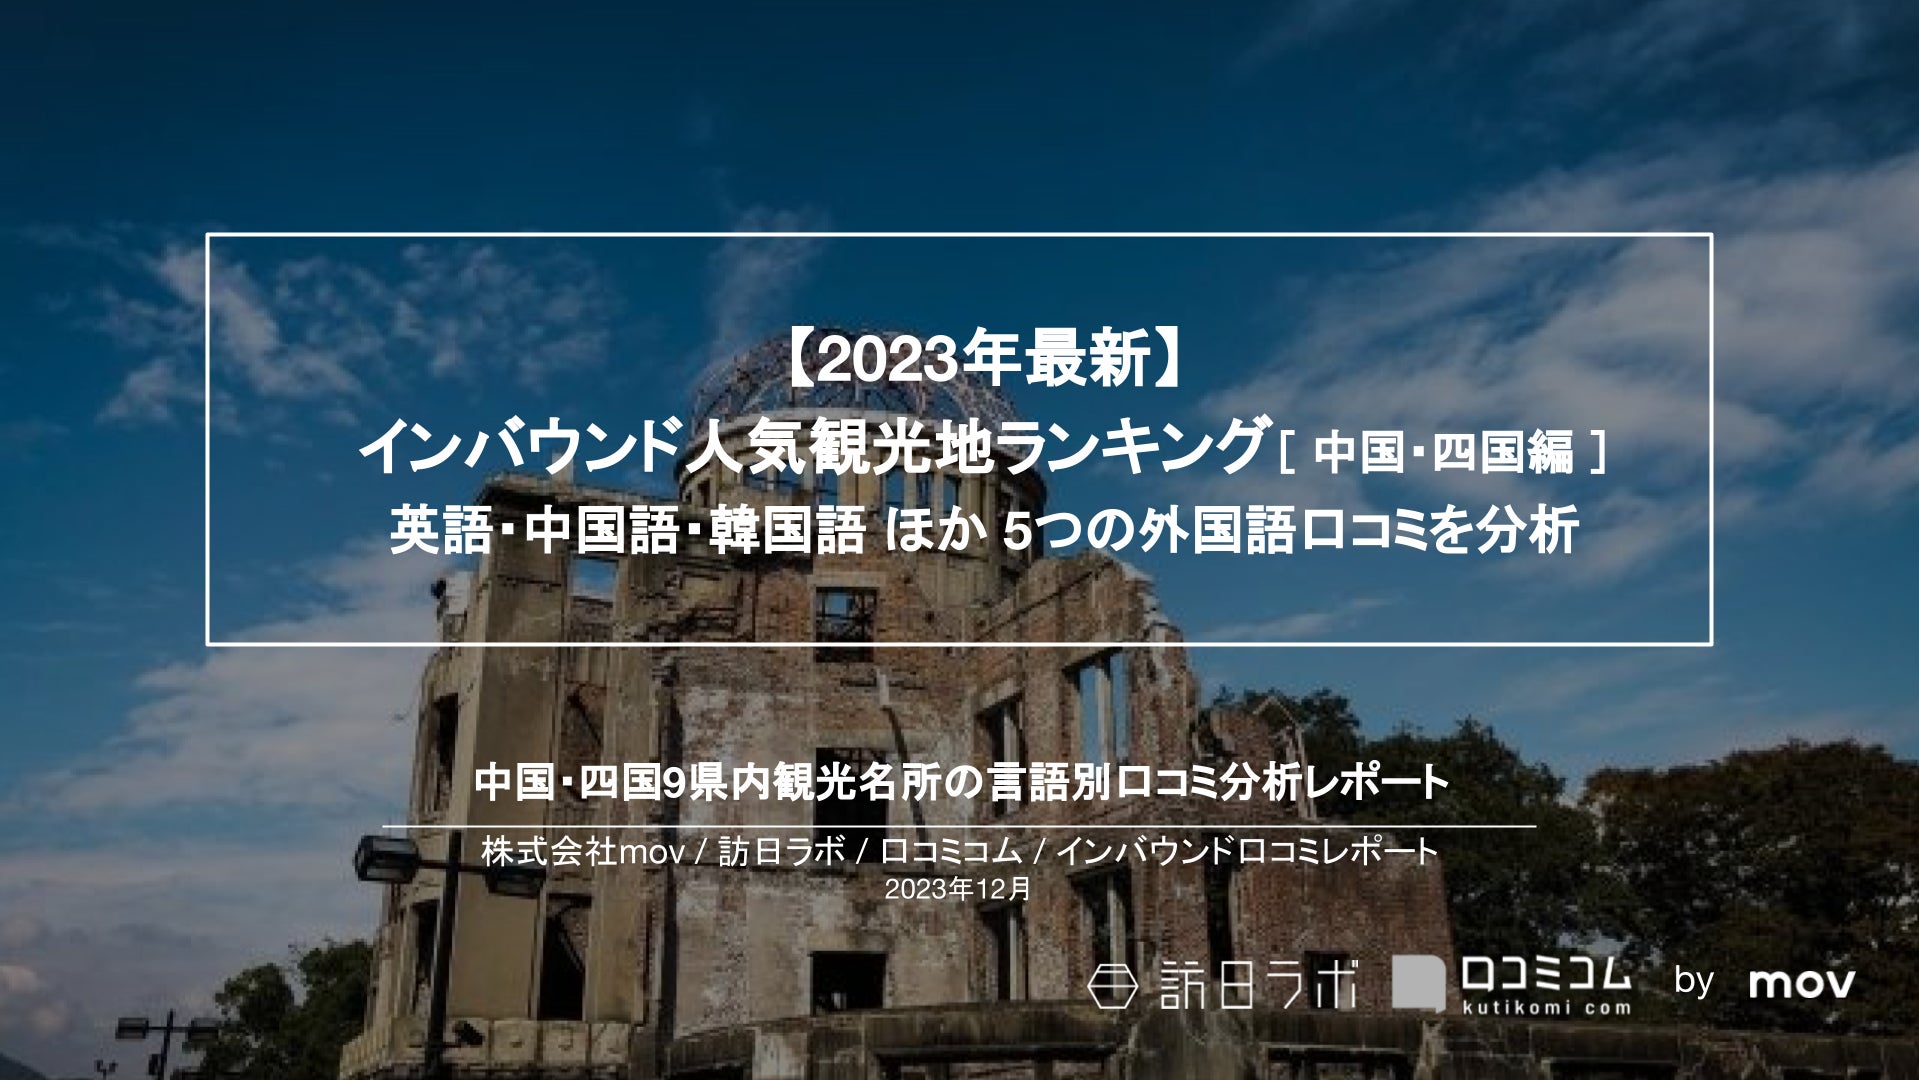 【ラグジュアリーウェルネスリゾートMUWA NISEKO】2023年12月15日についに開業